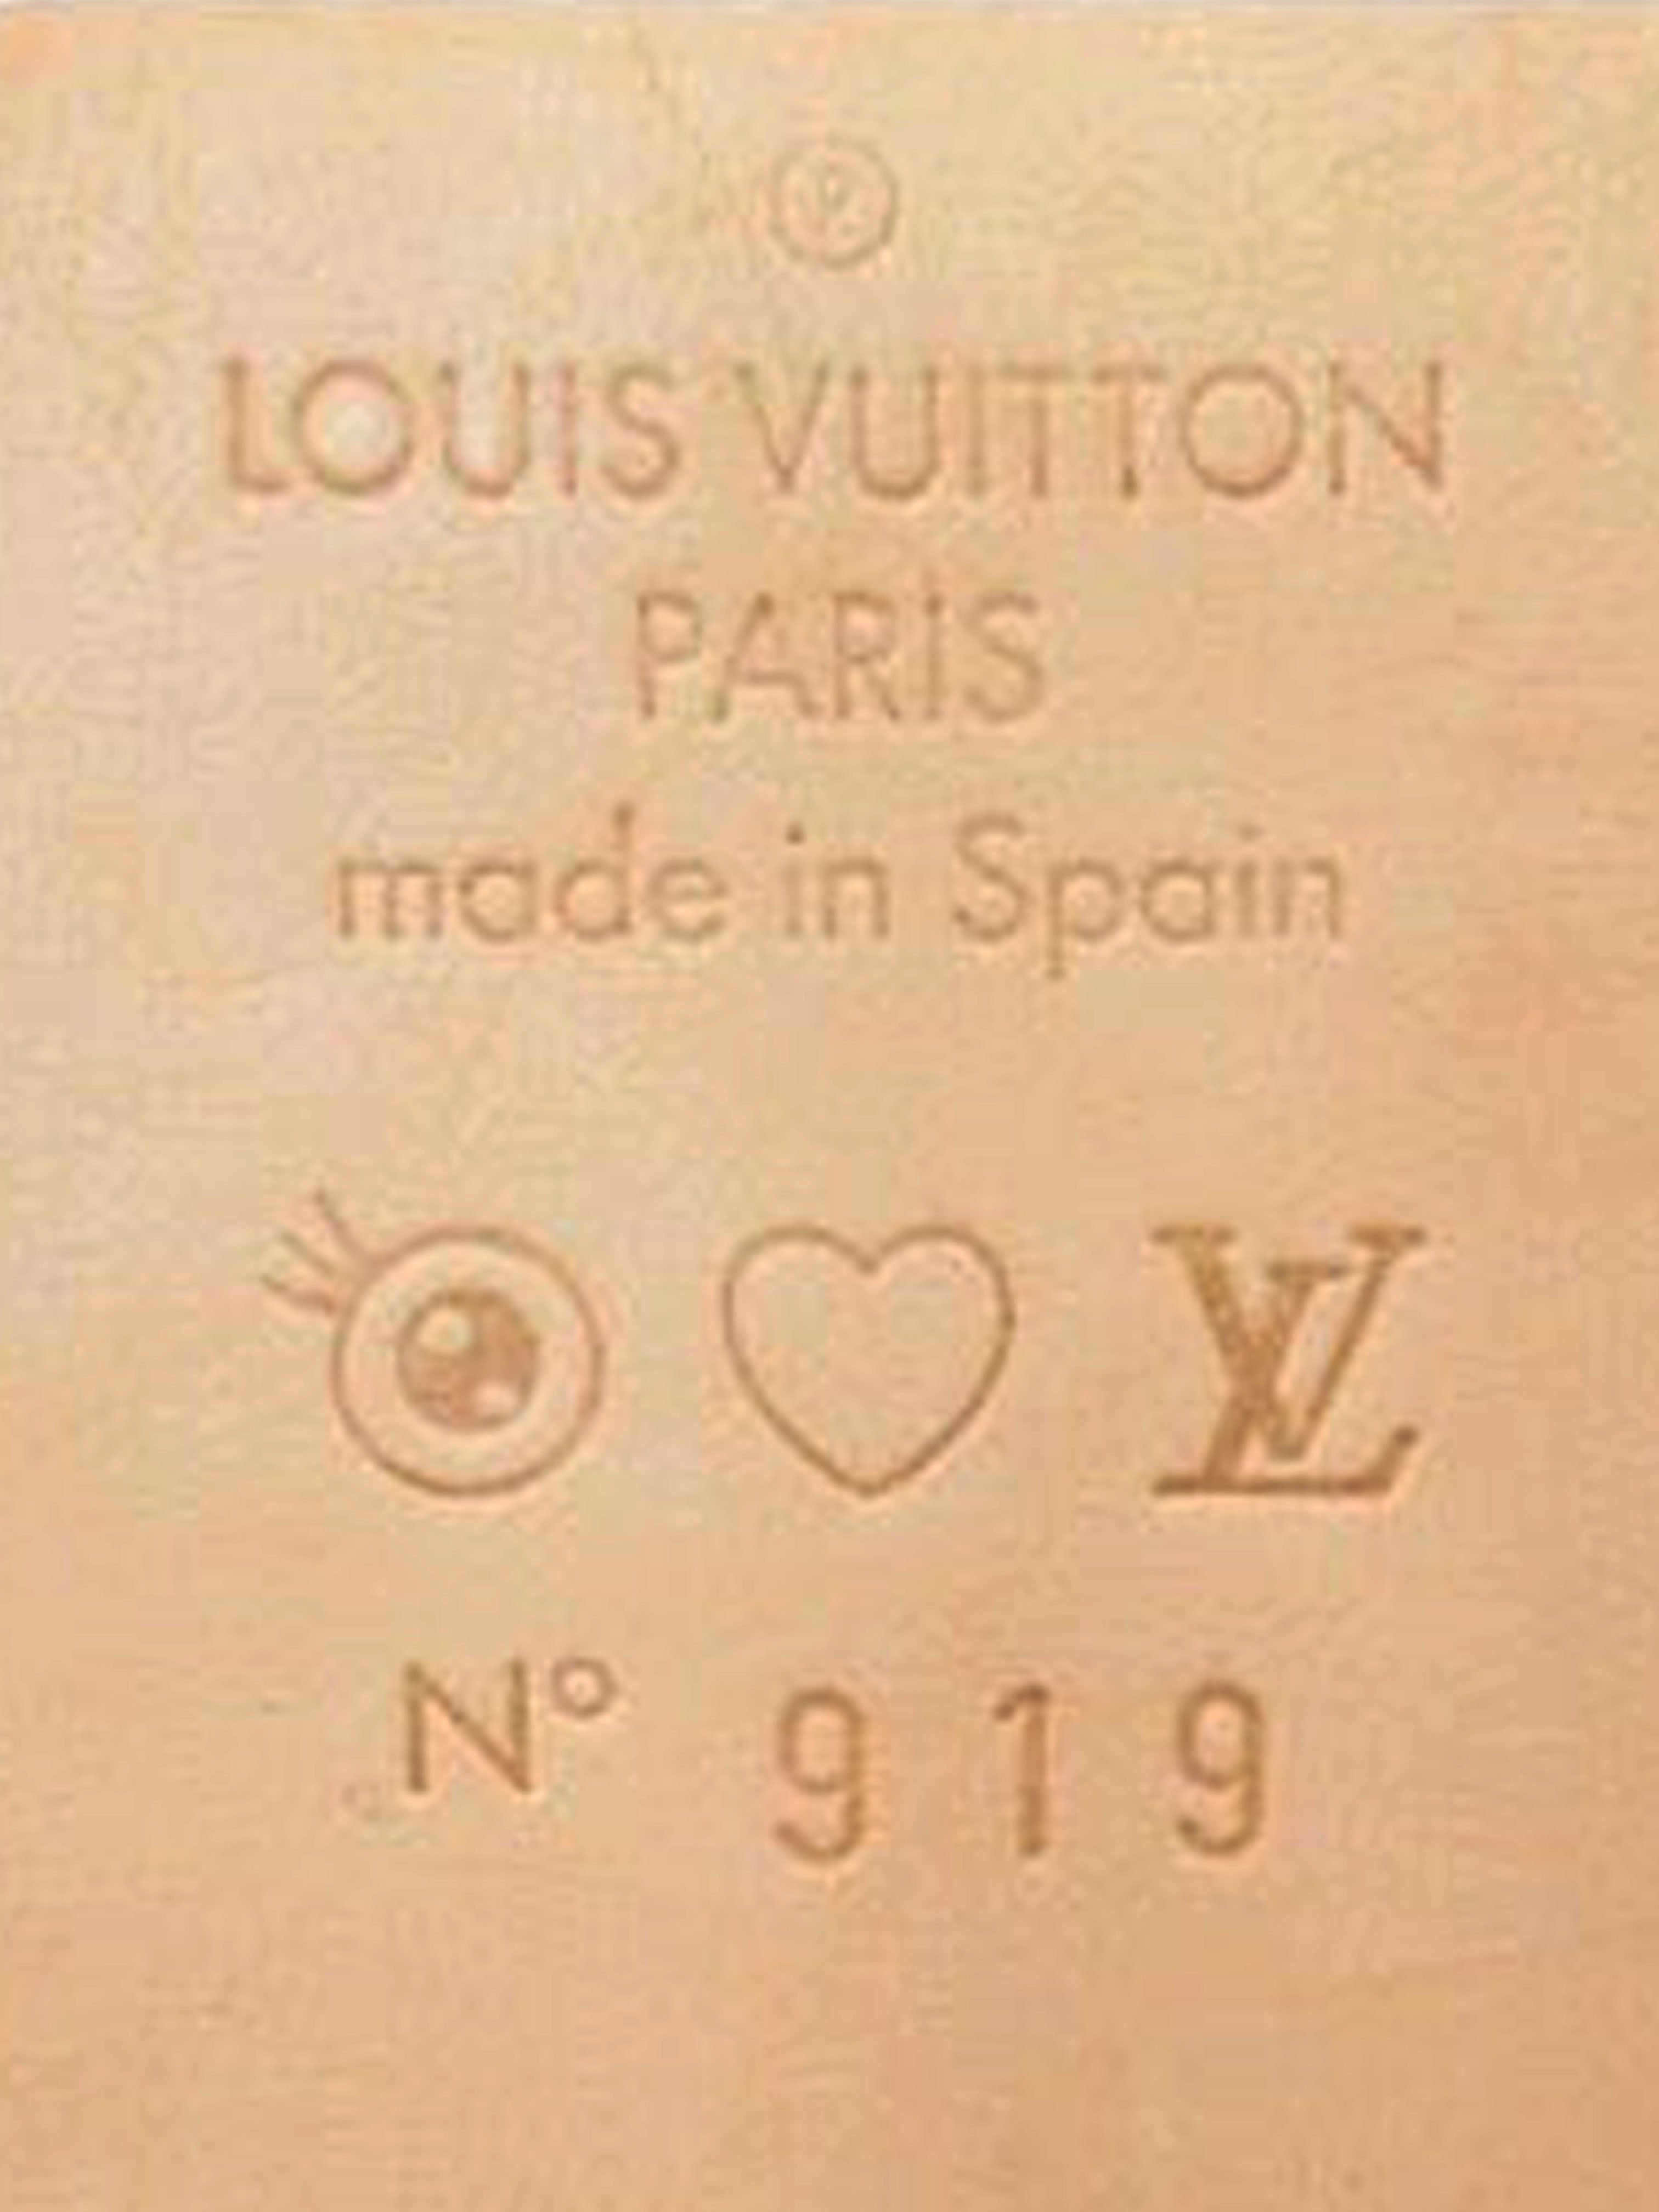 Louis Vuitton 2003 Murakami Multicolor Eye Love You Sac Retro Bag